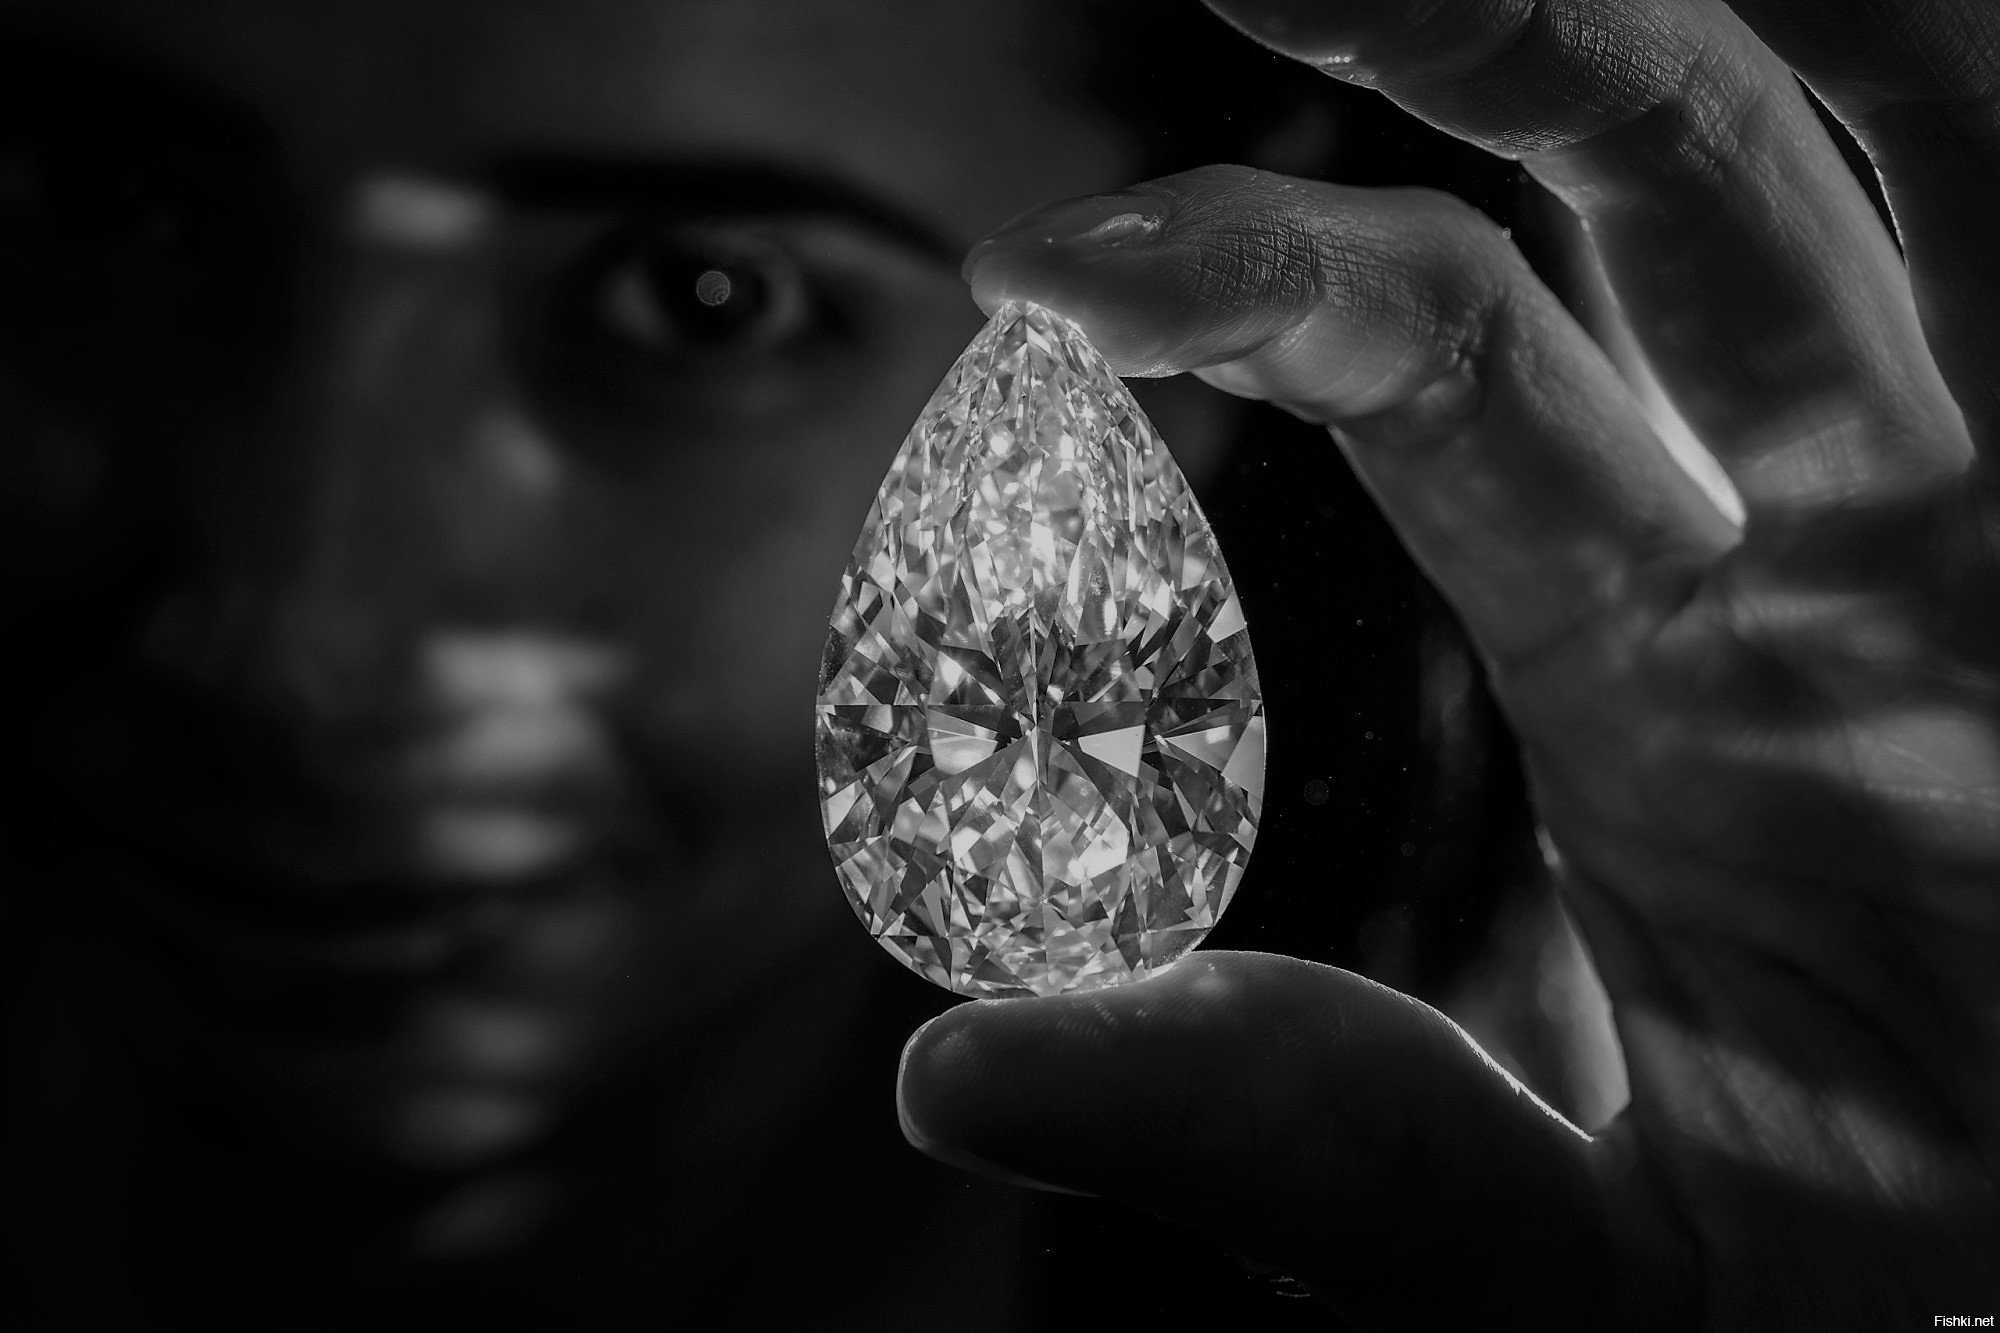 Инвестирование в драгоценности first class diamonds. Дорогие камни. Большие бриллианты.